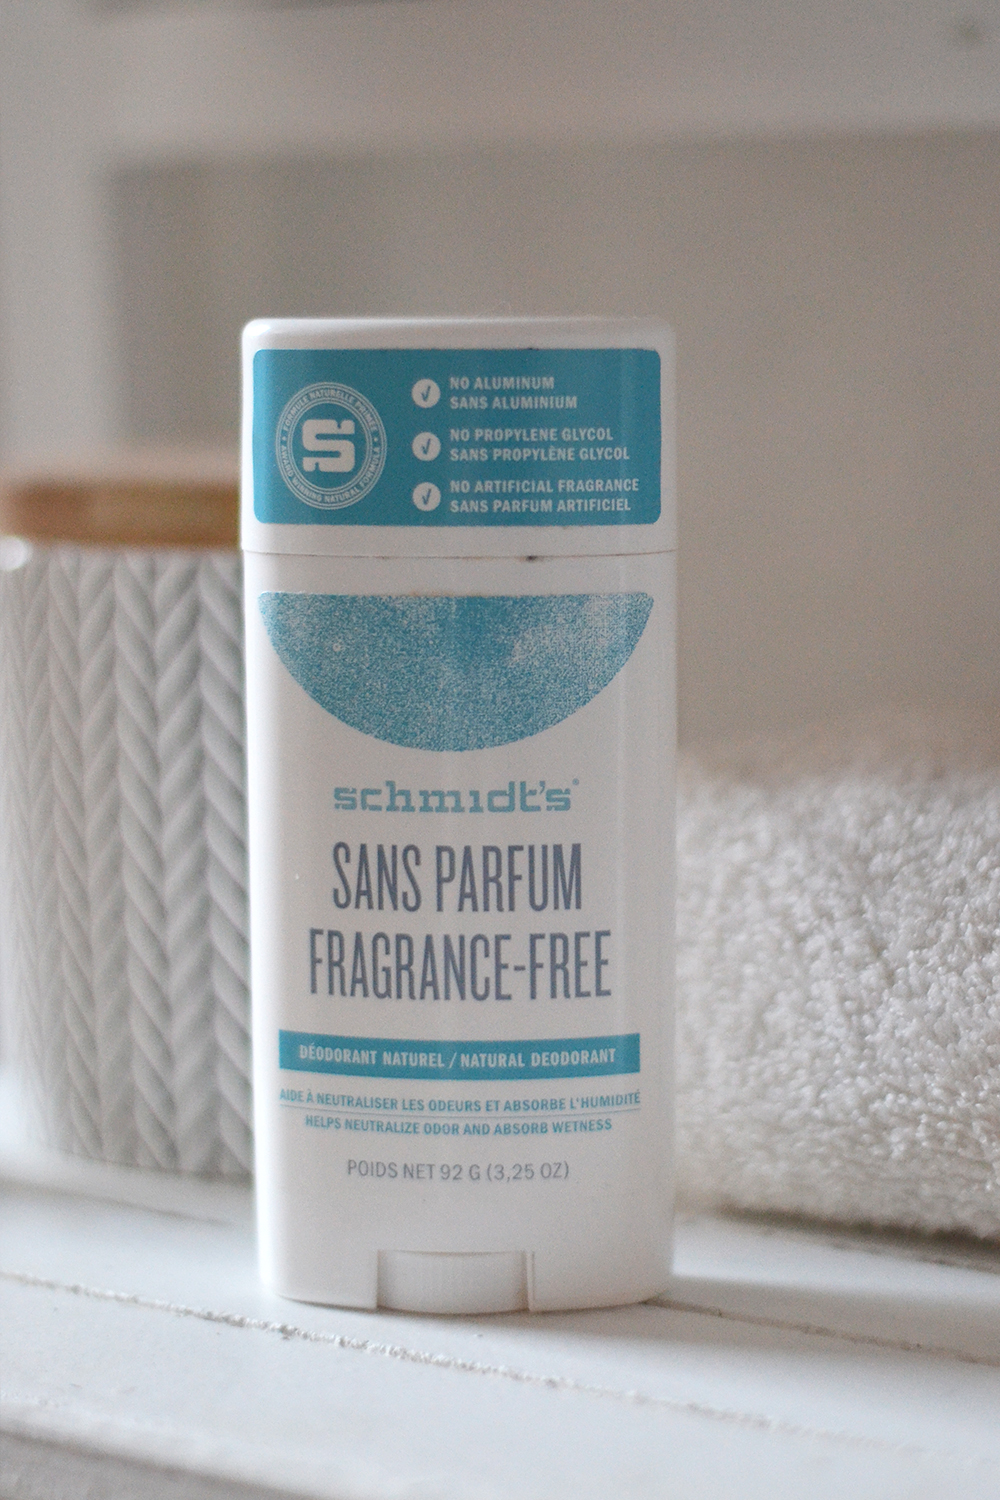 Le déodorant Schmidt's - Fragrance free